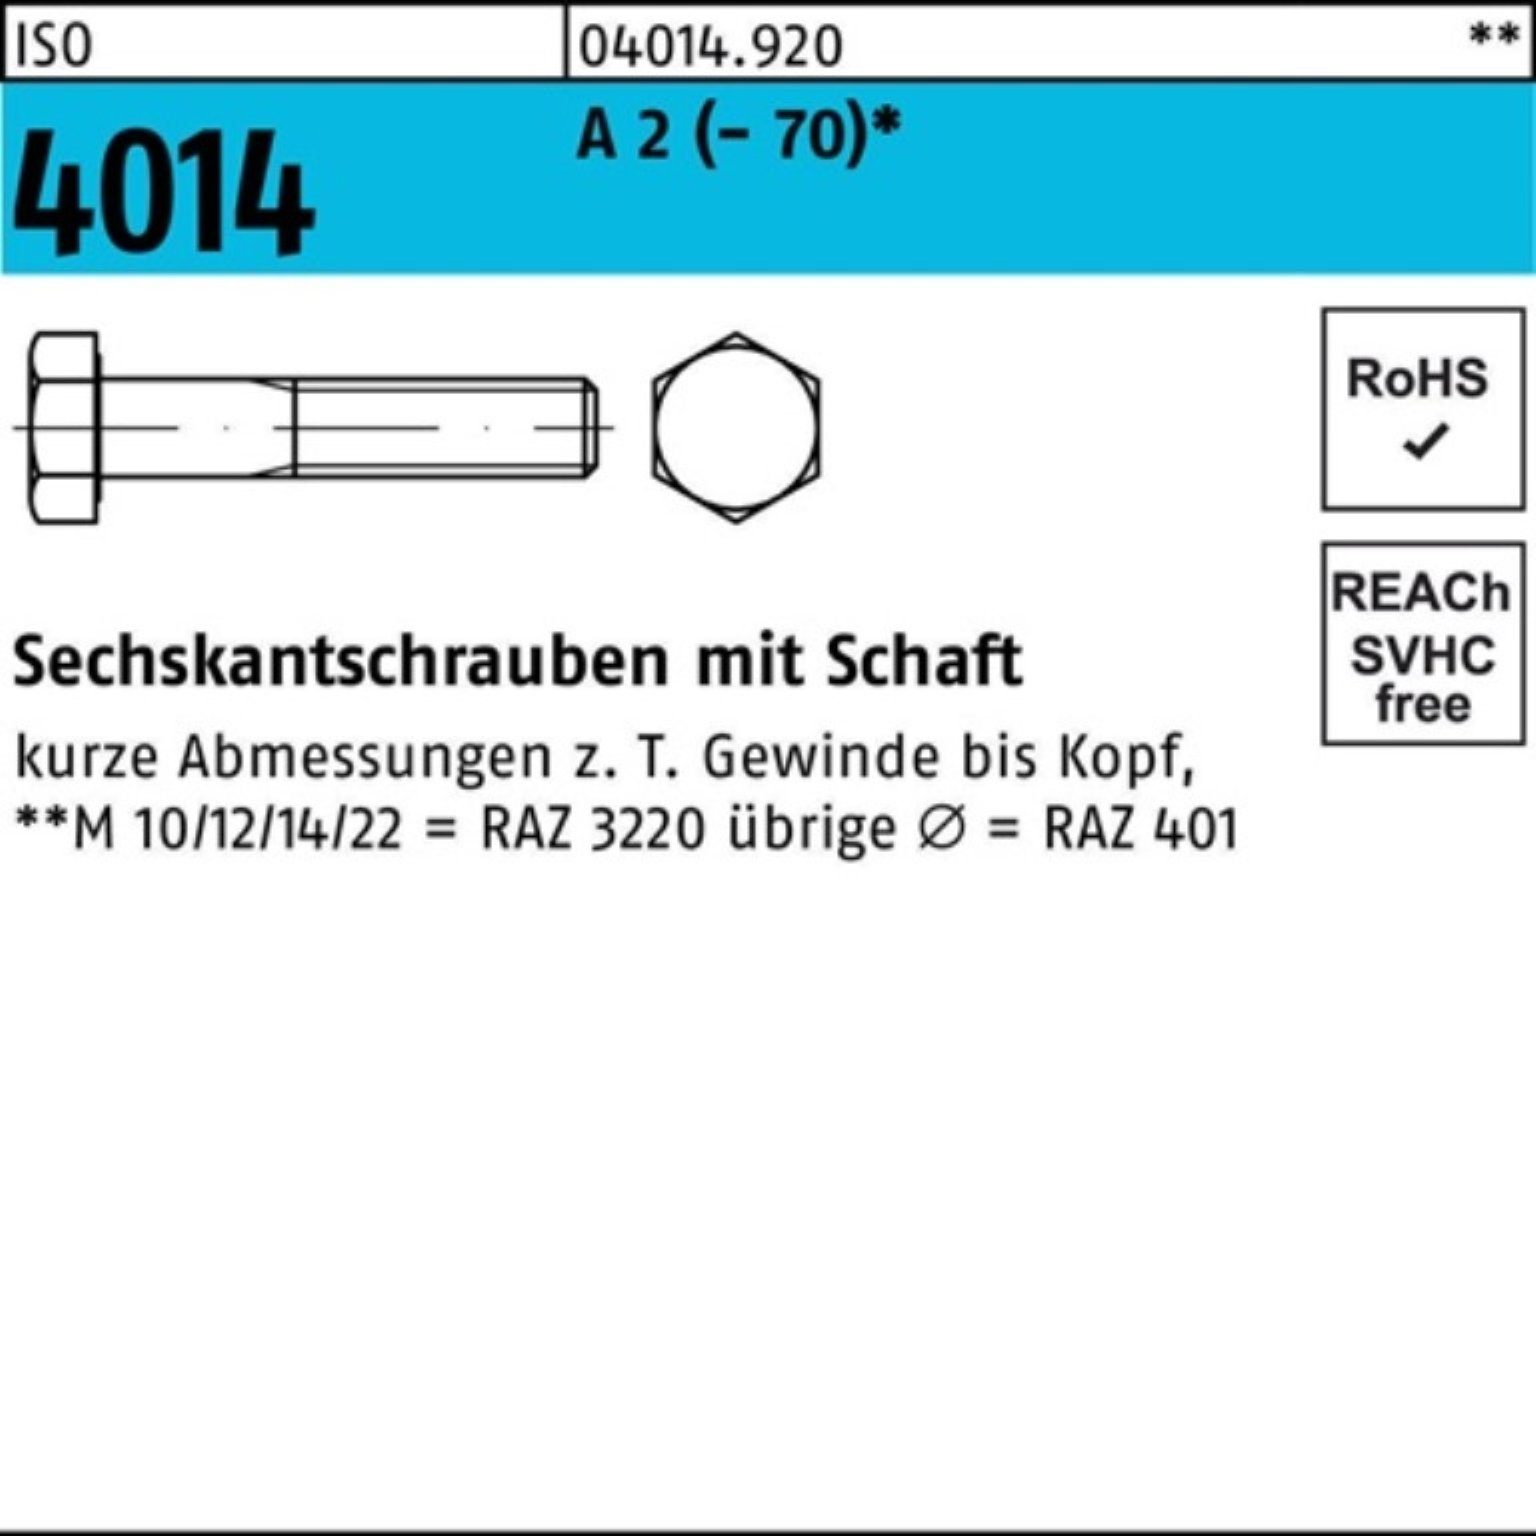 Bufab Sechskantschraube 100er Pack Sechskantschraube ISO 4014 Schaft M12x 210 A 2 (70) 1 St